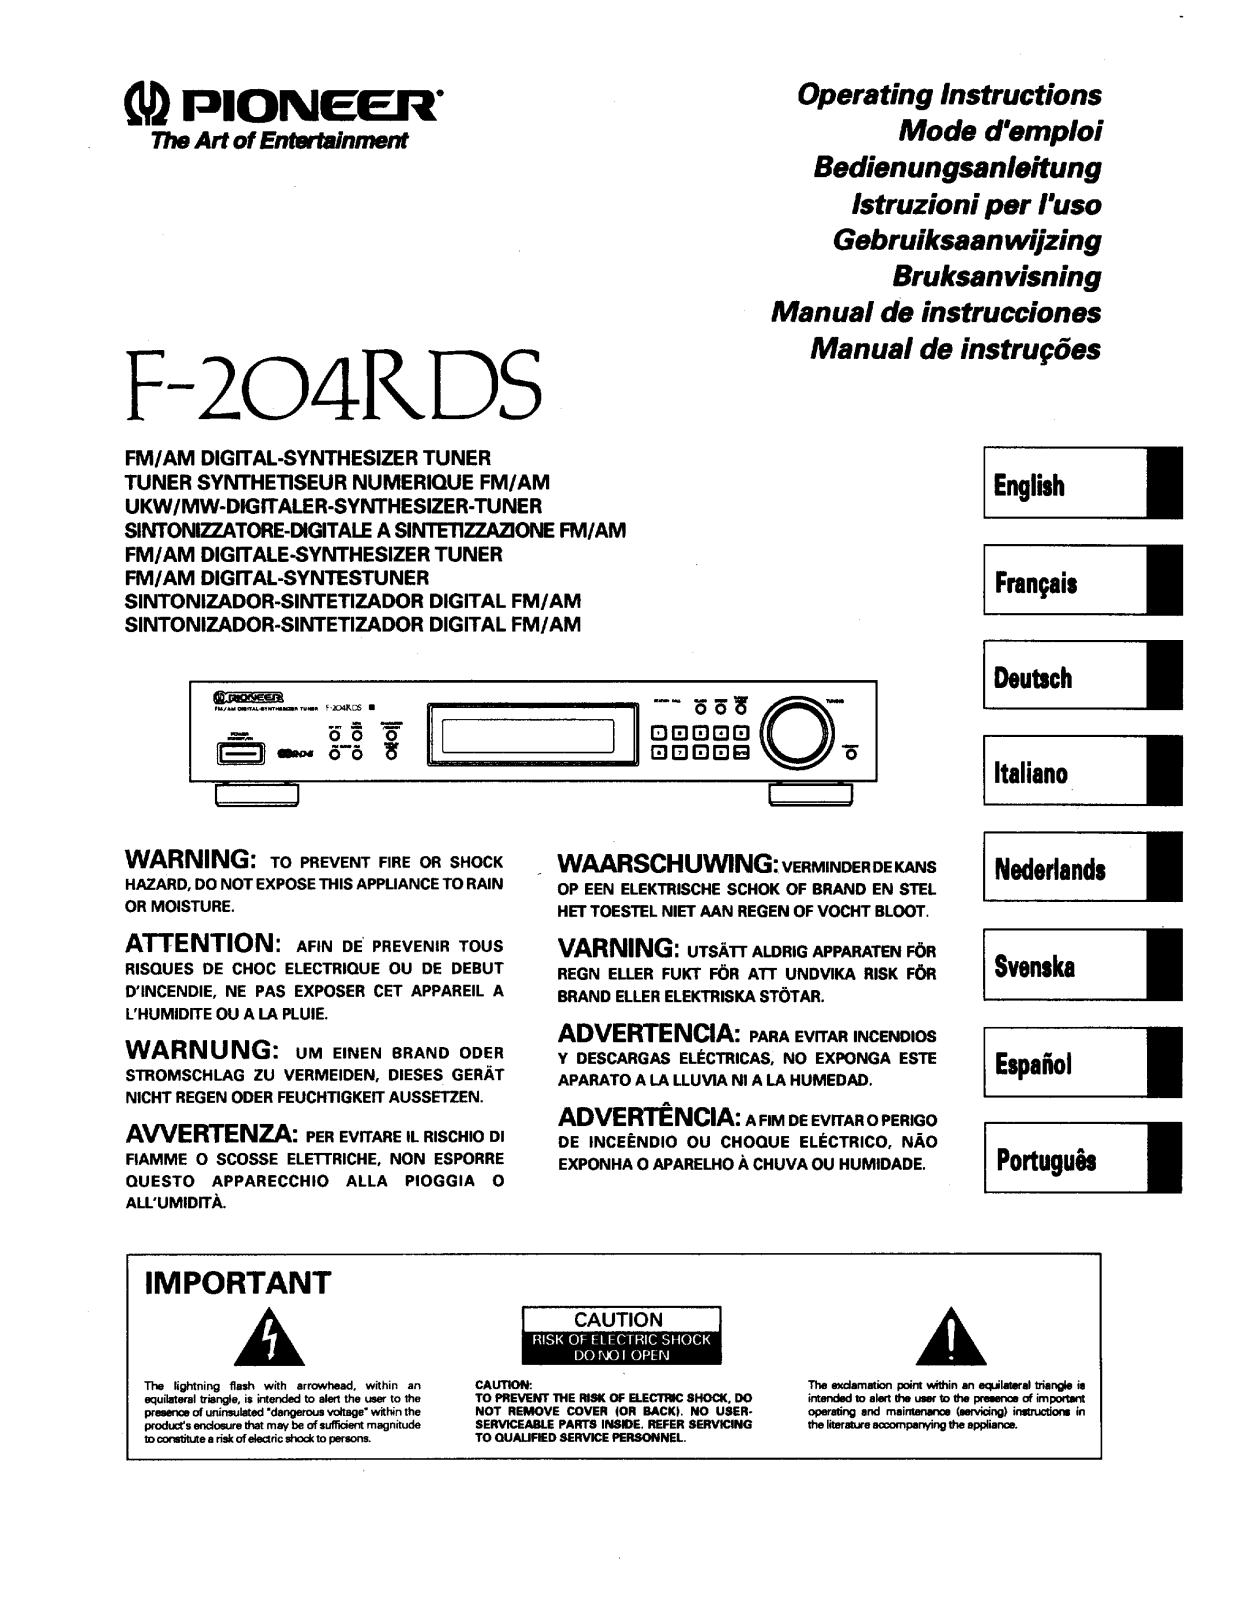 Pioneer F-204RDS Manual